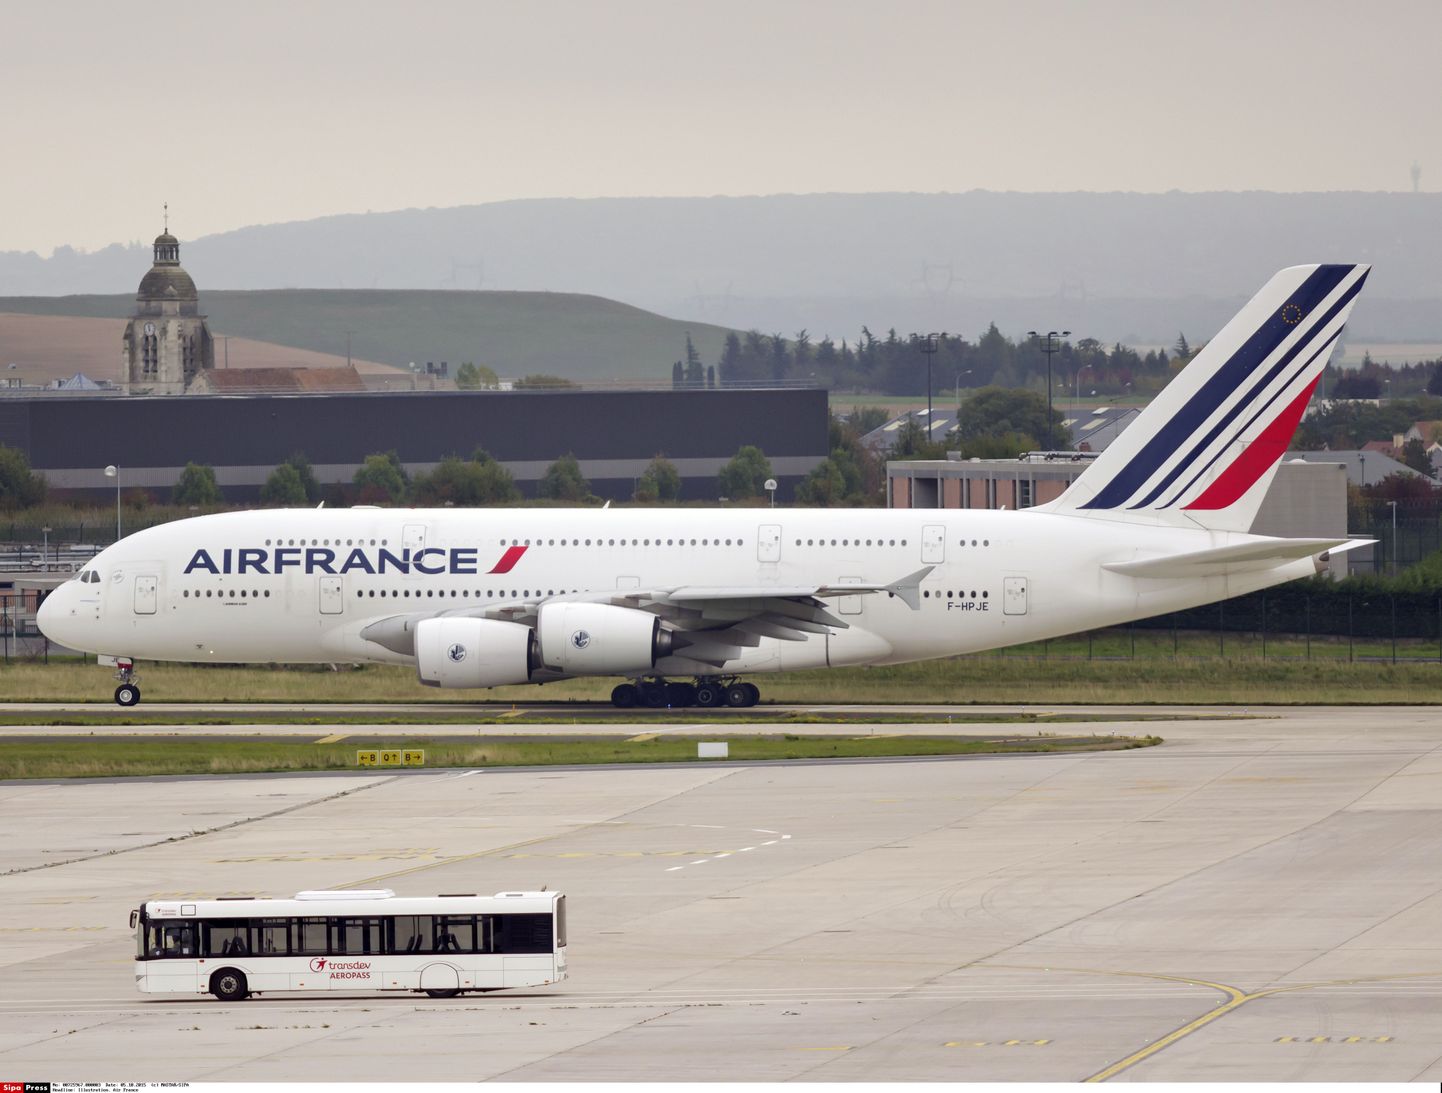 Air France'i lennuk.